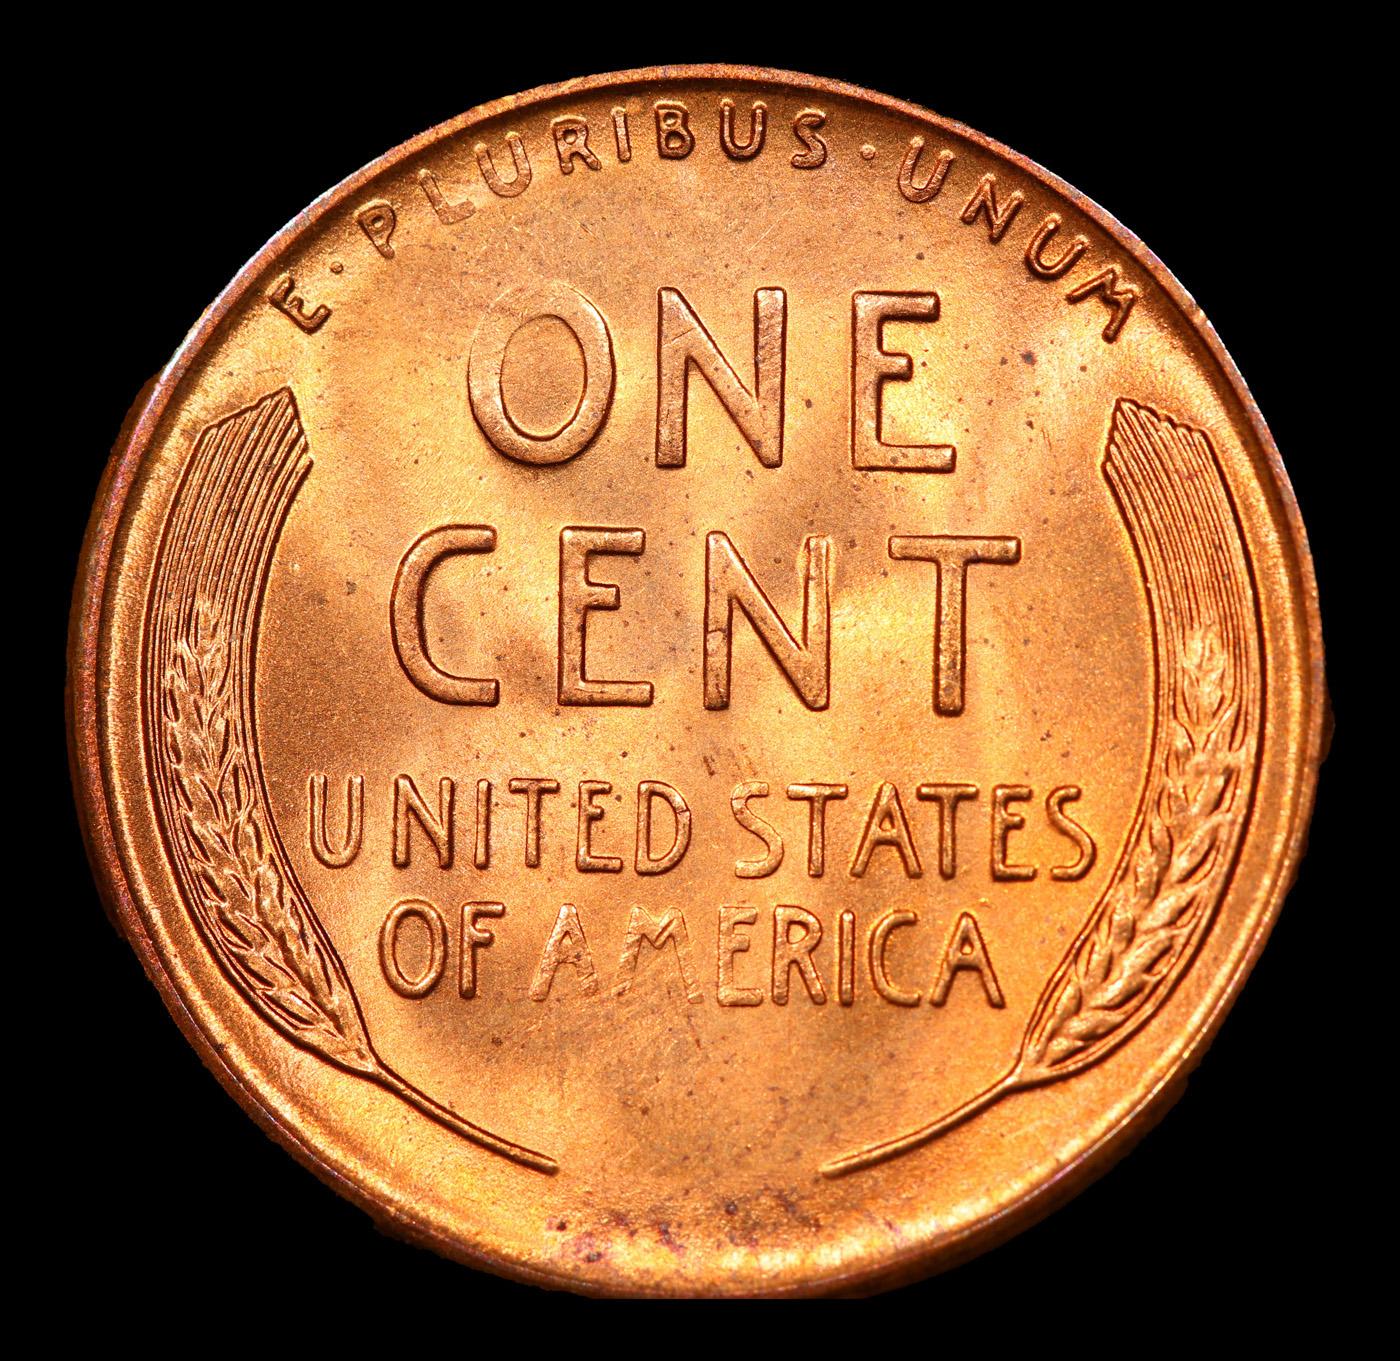 1955-s *MINT ERROR*  Lincoln Cent 1c Grades GEM++ Unc RD